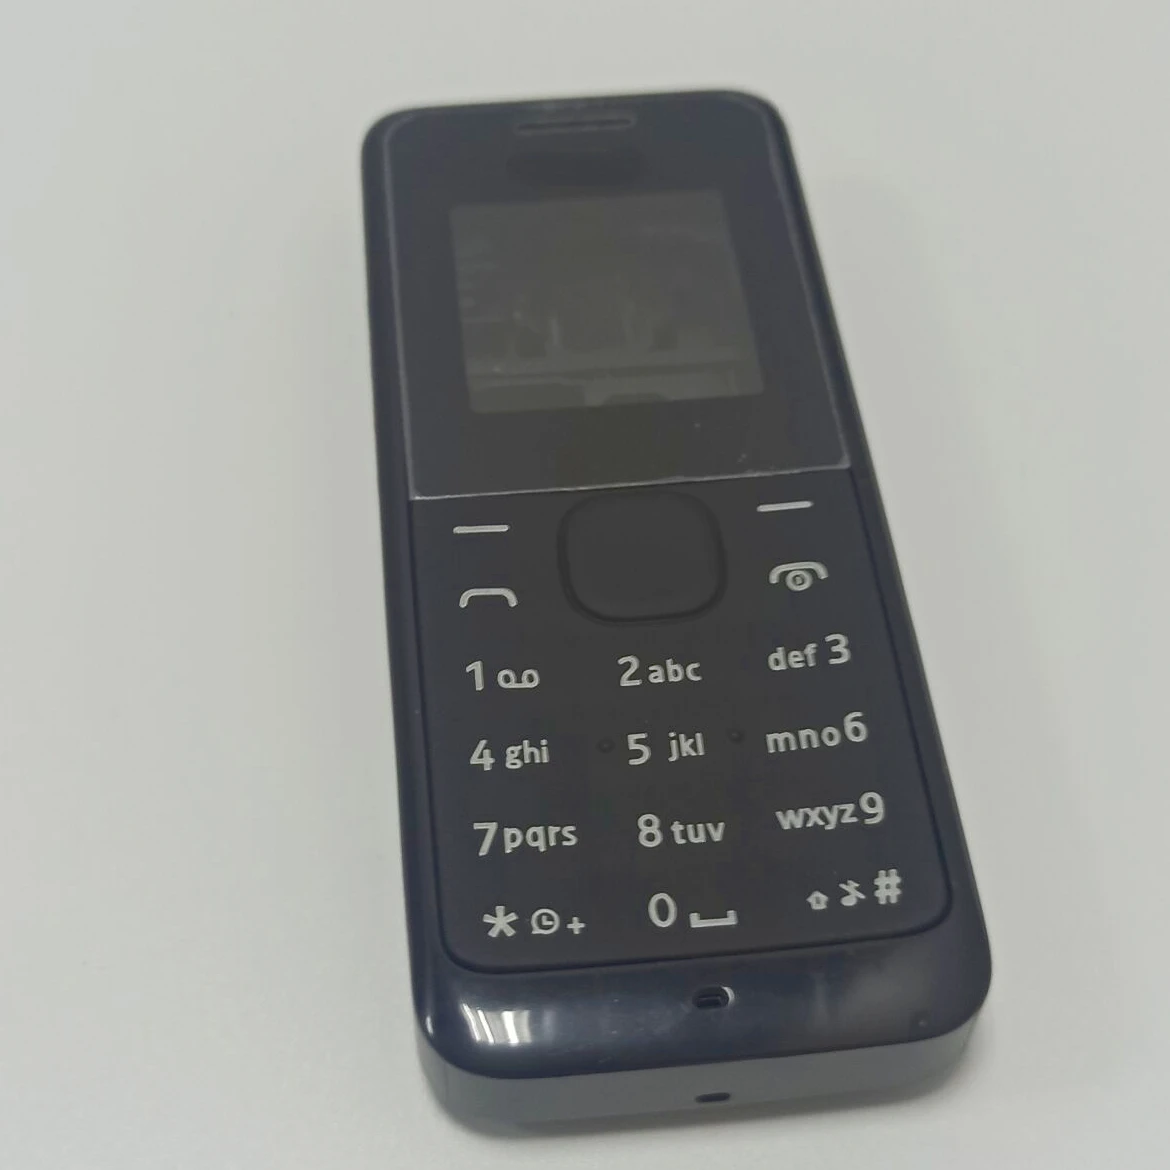 חדש עבור Nokia 105 1050 RM1120 Rm908 מלאה מלאה טלפון נייד דיור מכסה הסוללה מסגרת הדלת עם מקלדת אנגלית - 2